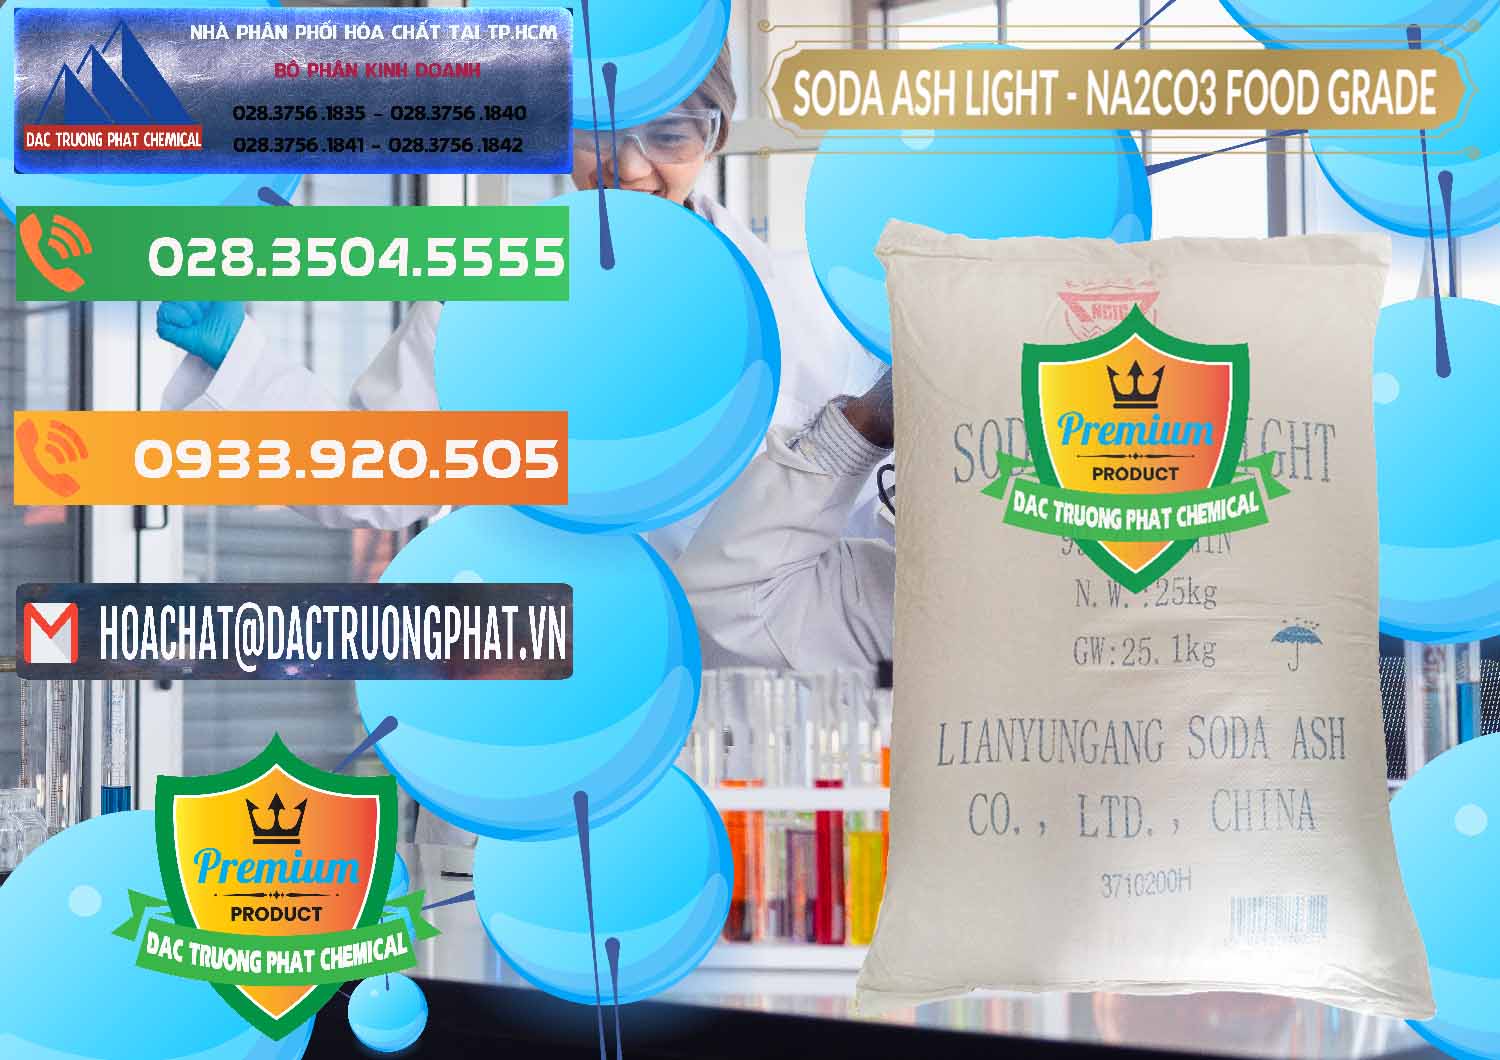 Nơi chuyên cung ứng và bán Soda Ash Light – NA2CO3 Food Grade Trung Quốc China - 0127 - Chuyên cung cấp _ phân phối hóa chất tại TP.HCM - hoachatxulynuoc.com.vn